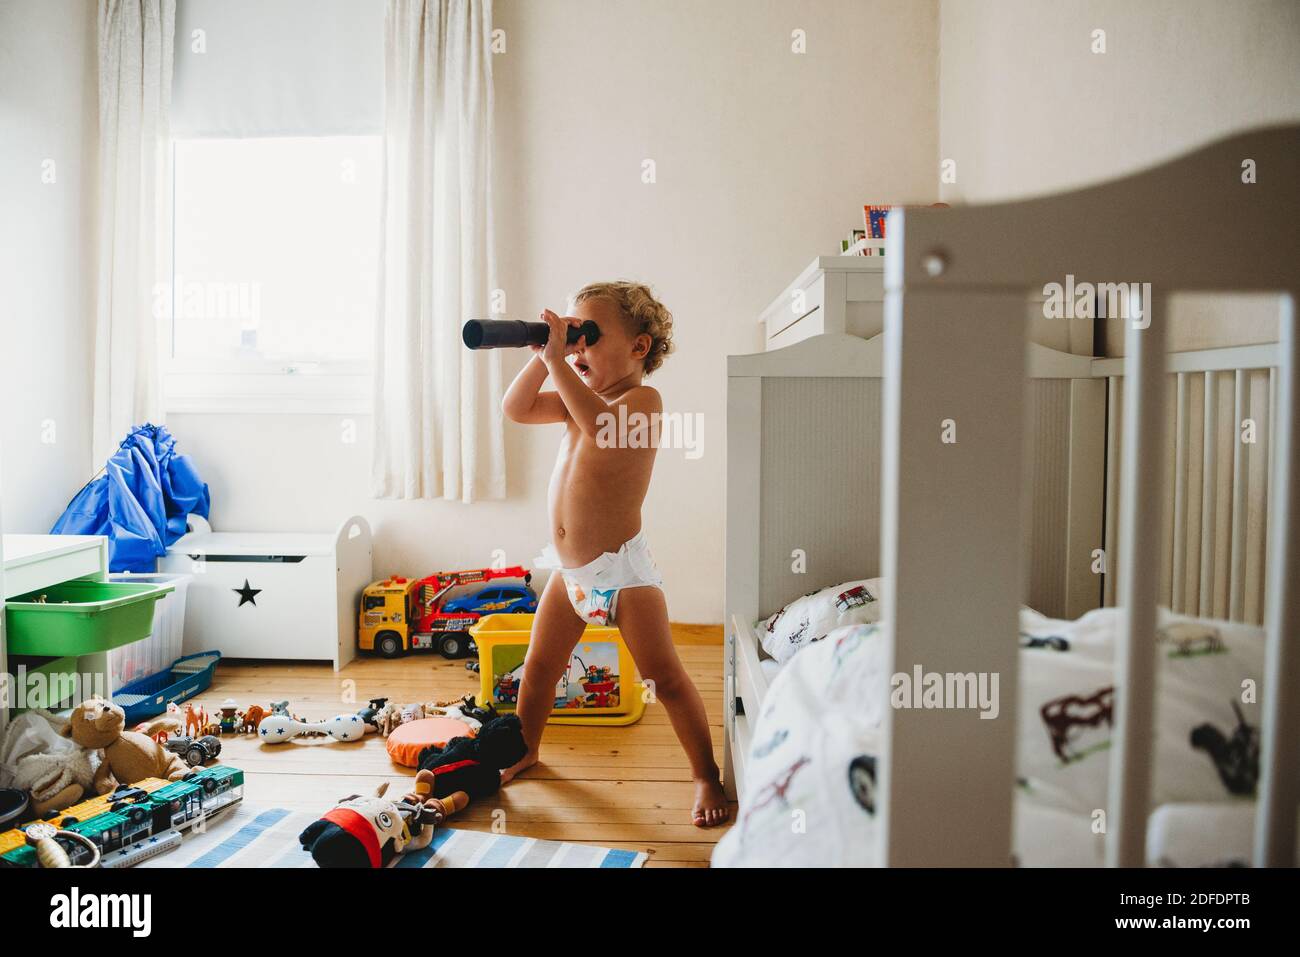 Enfant dans les couches jouant dans sa pièce désordonnée prétendant qu'il est un pirate Banque D'Images